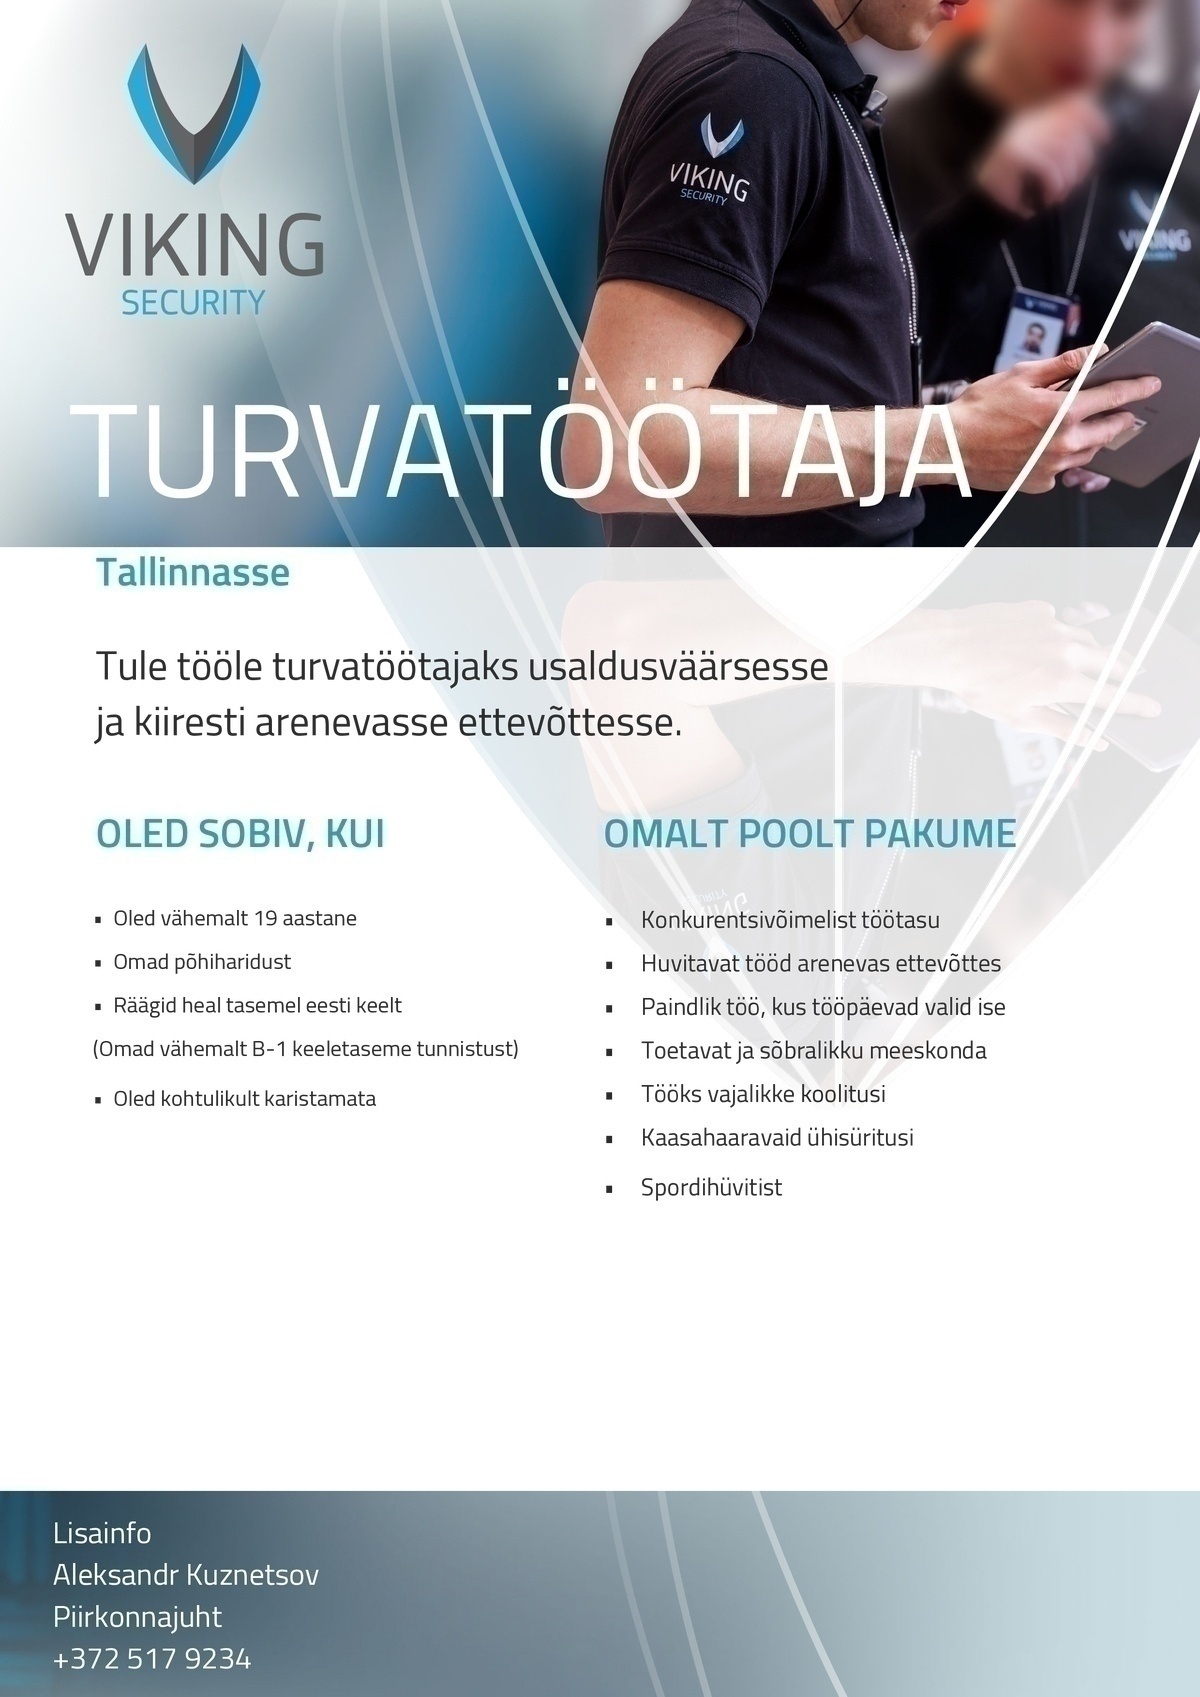 Viking Security AS Turvatöötaja Tallinnasse!